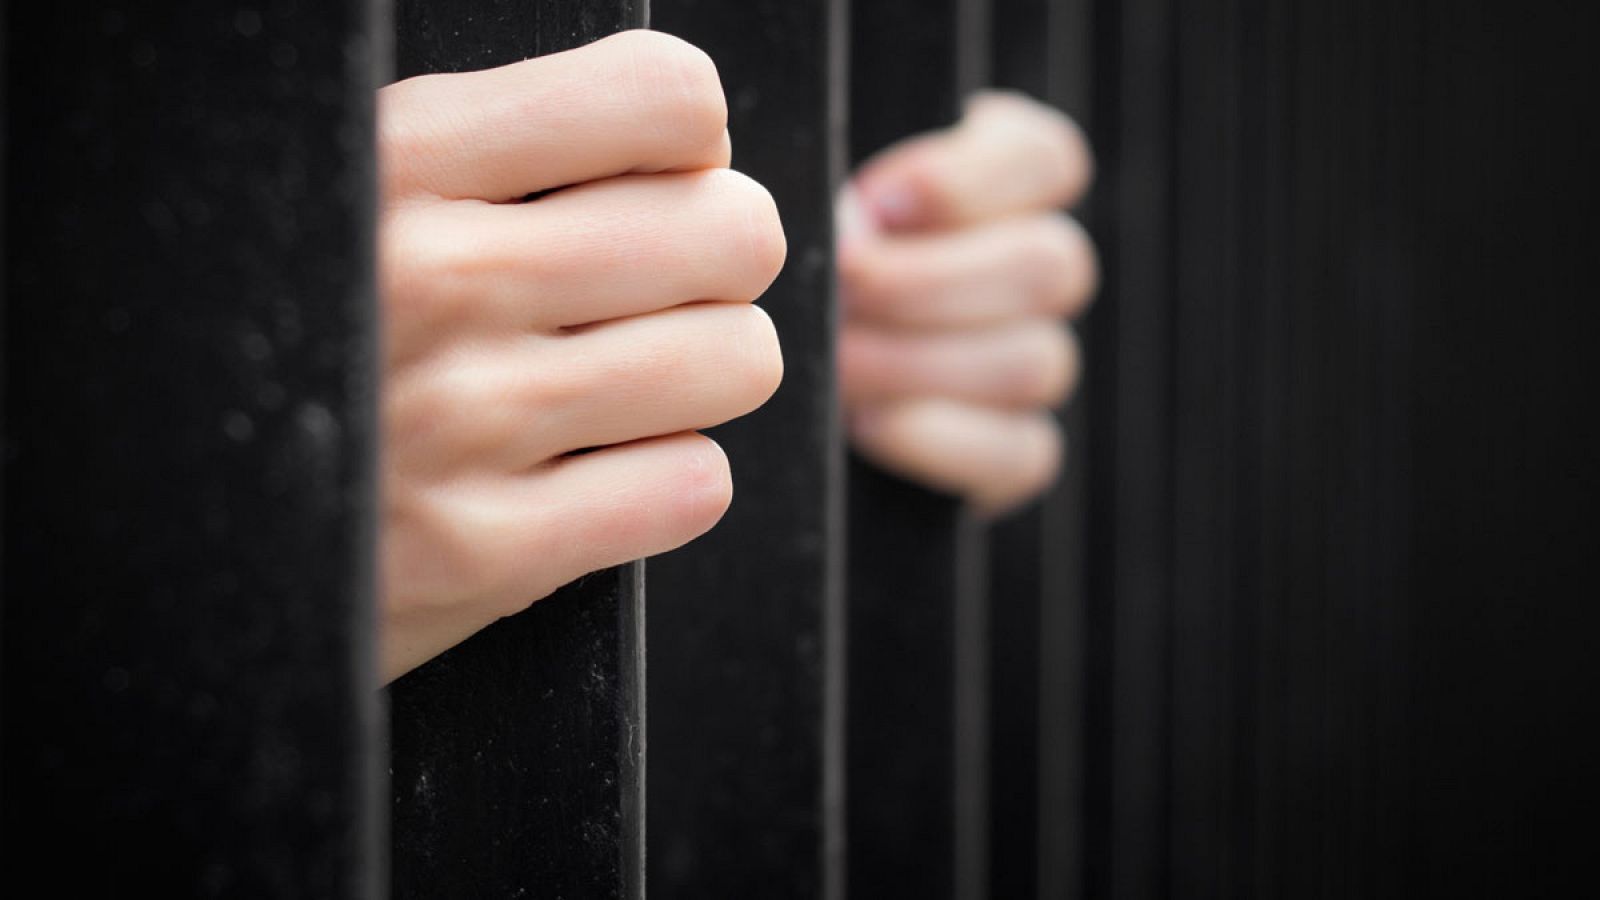 Las manos de un preso aprietan los barrotes de una celda